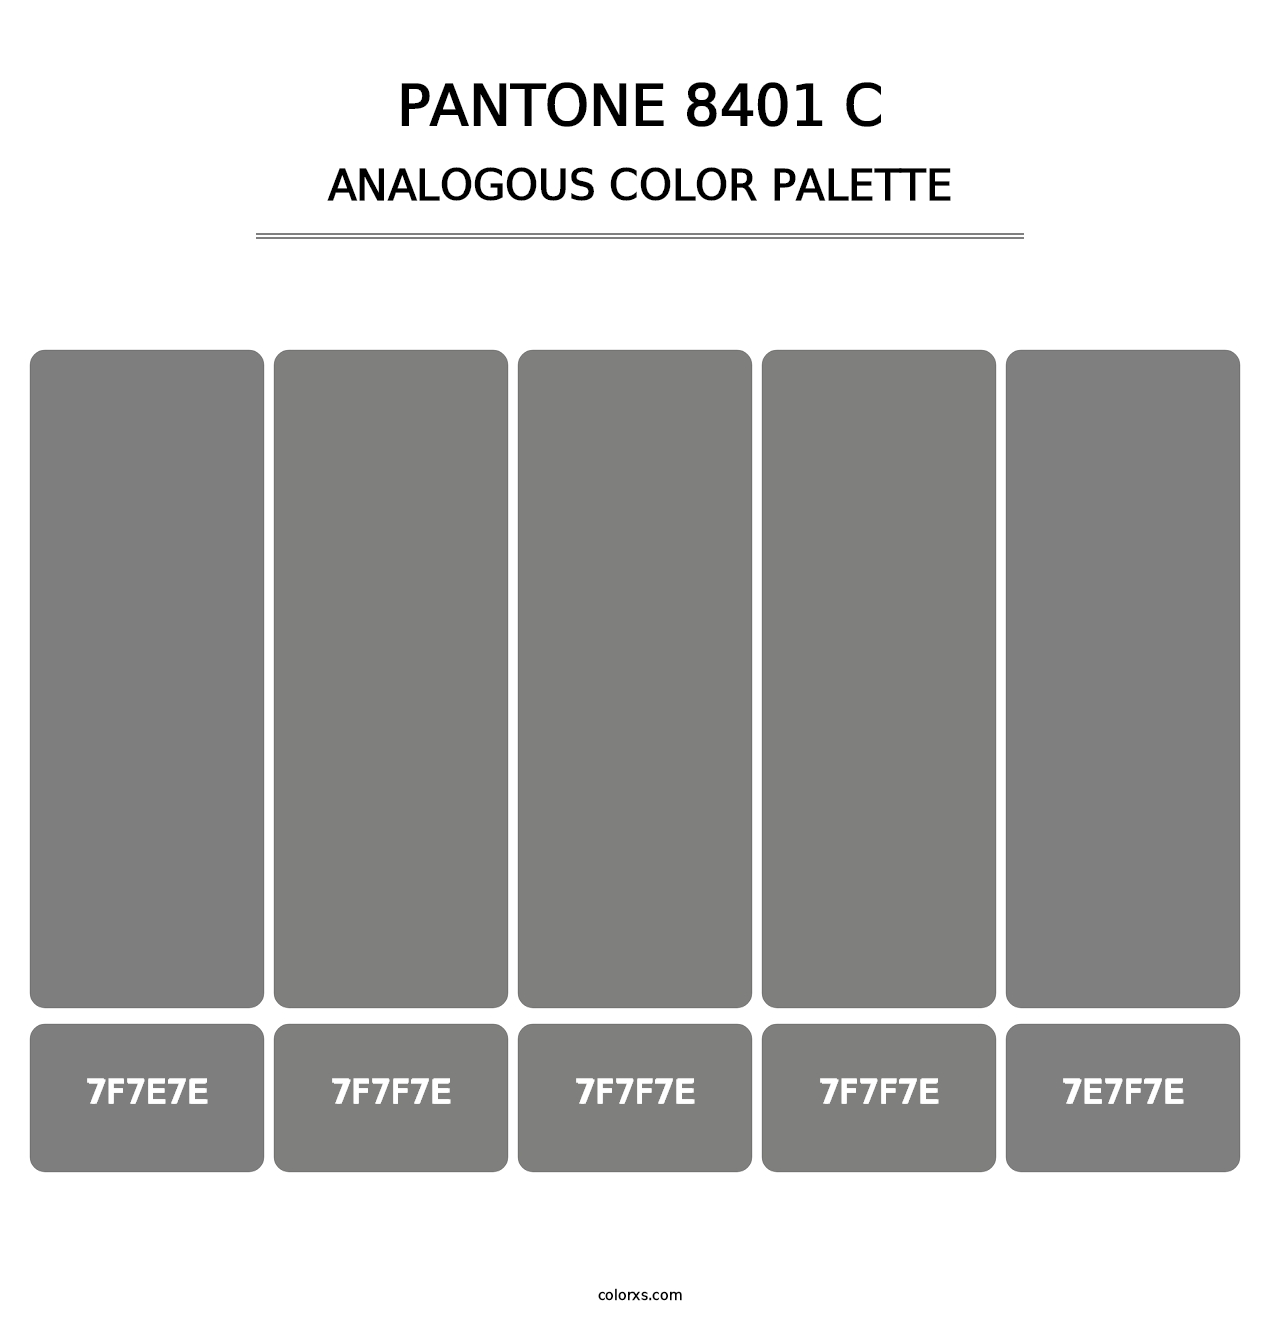 PANTONE 8401 C - Analogous Color Palette